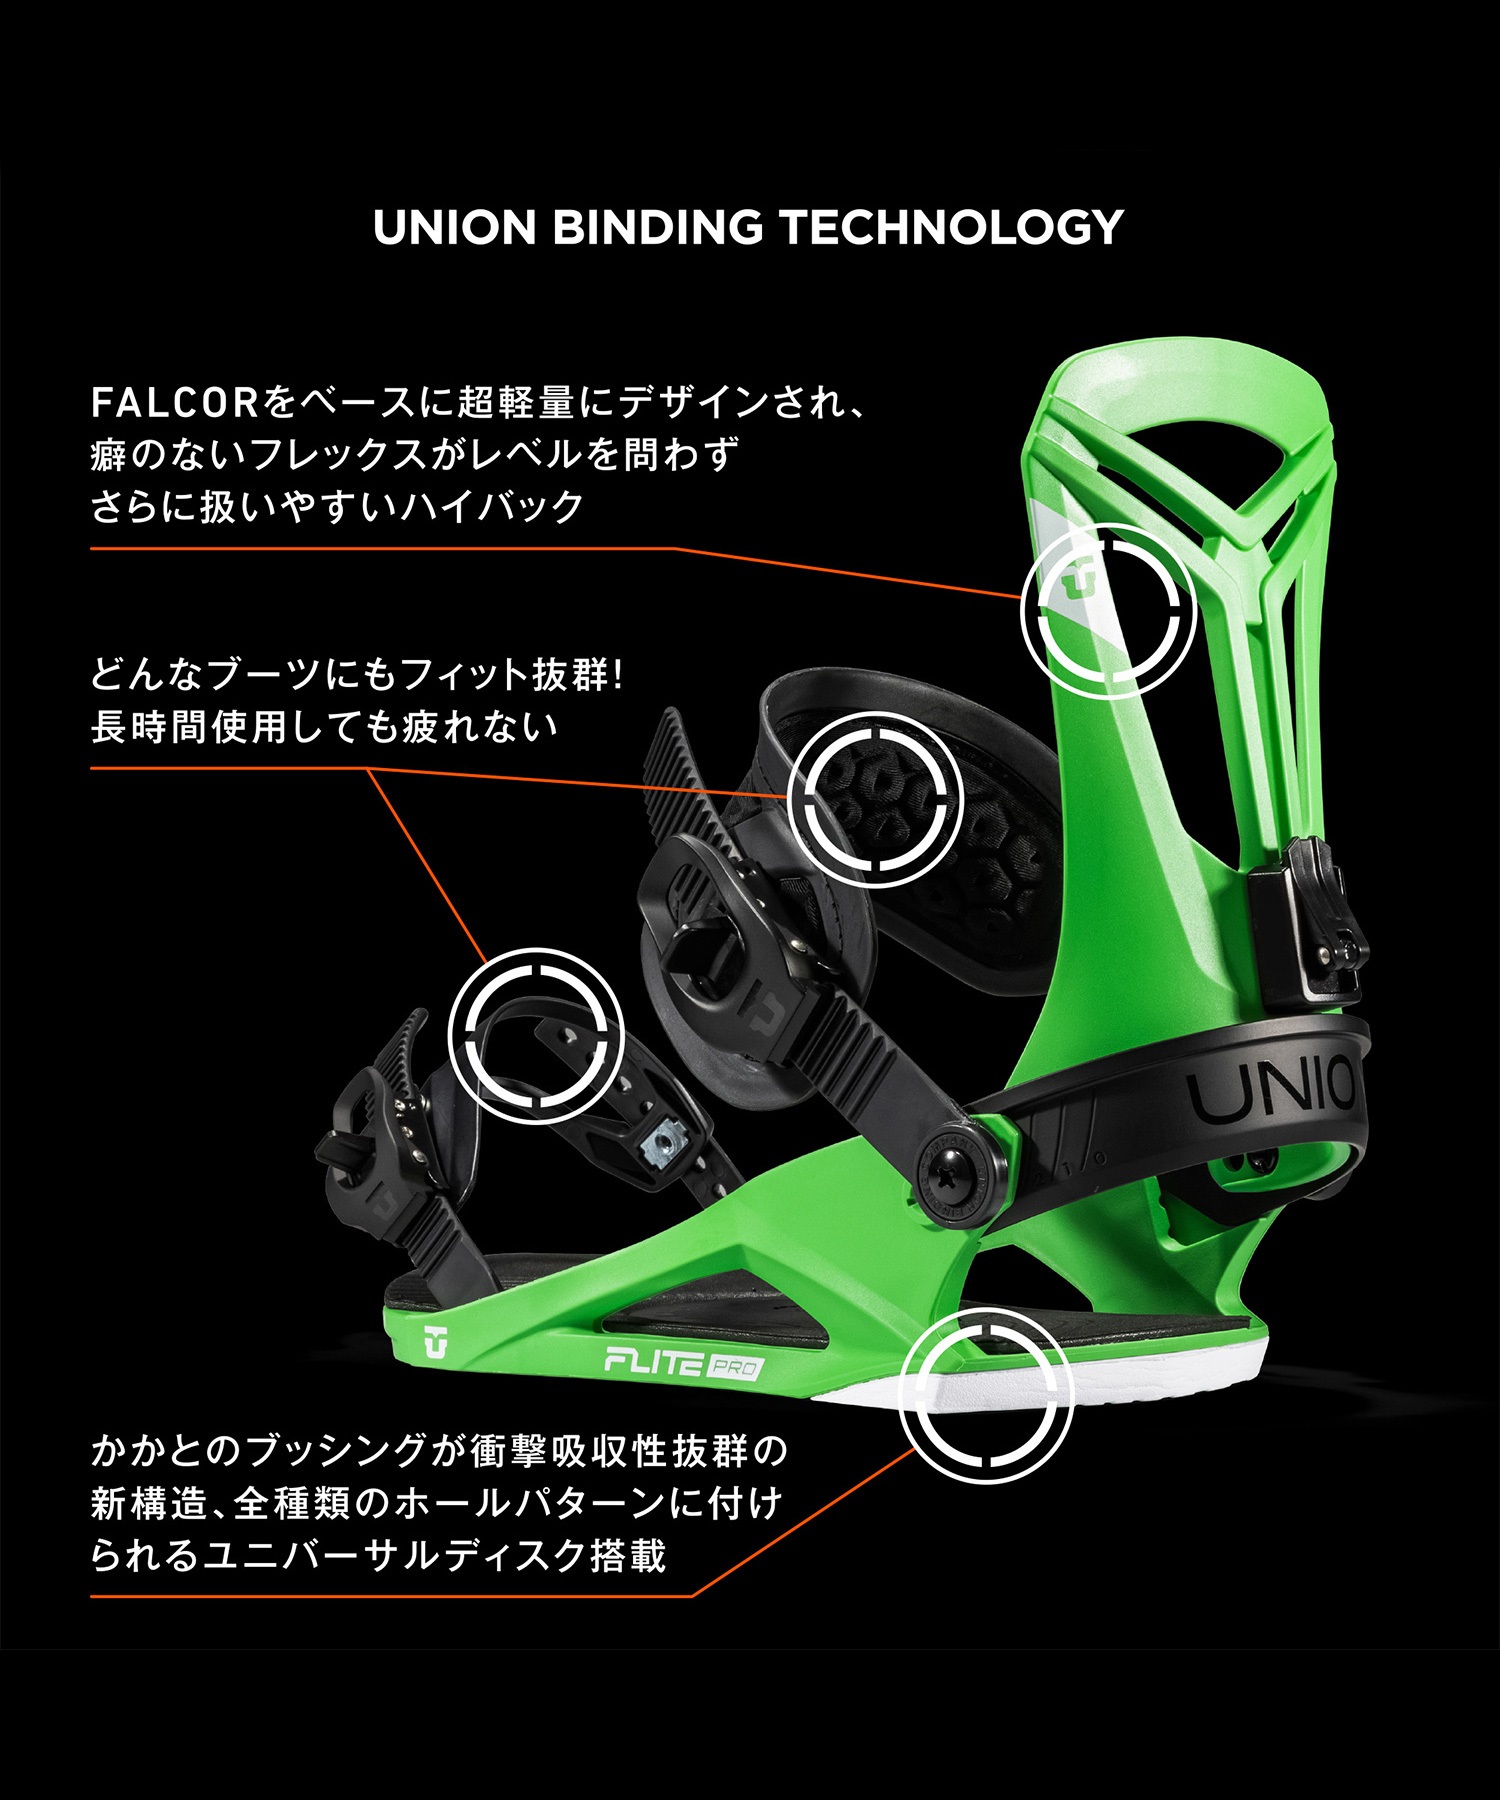 スノーボード バインディング メンズ UNION ユニオン FLITE PRO 23-24モデル ムラサキスポーツ KK B16(GREEN-S)